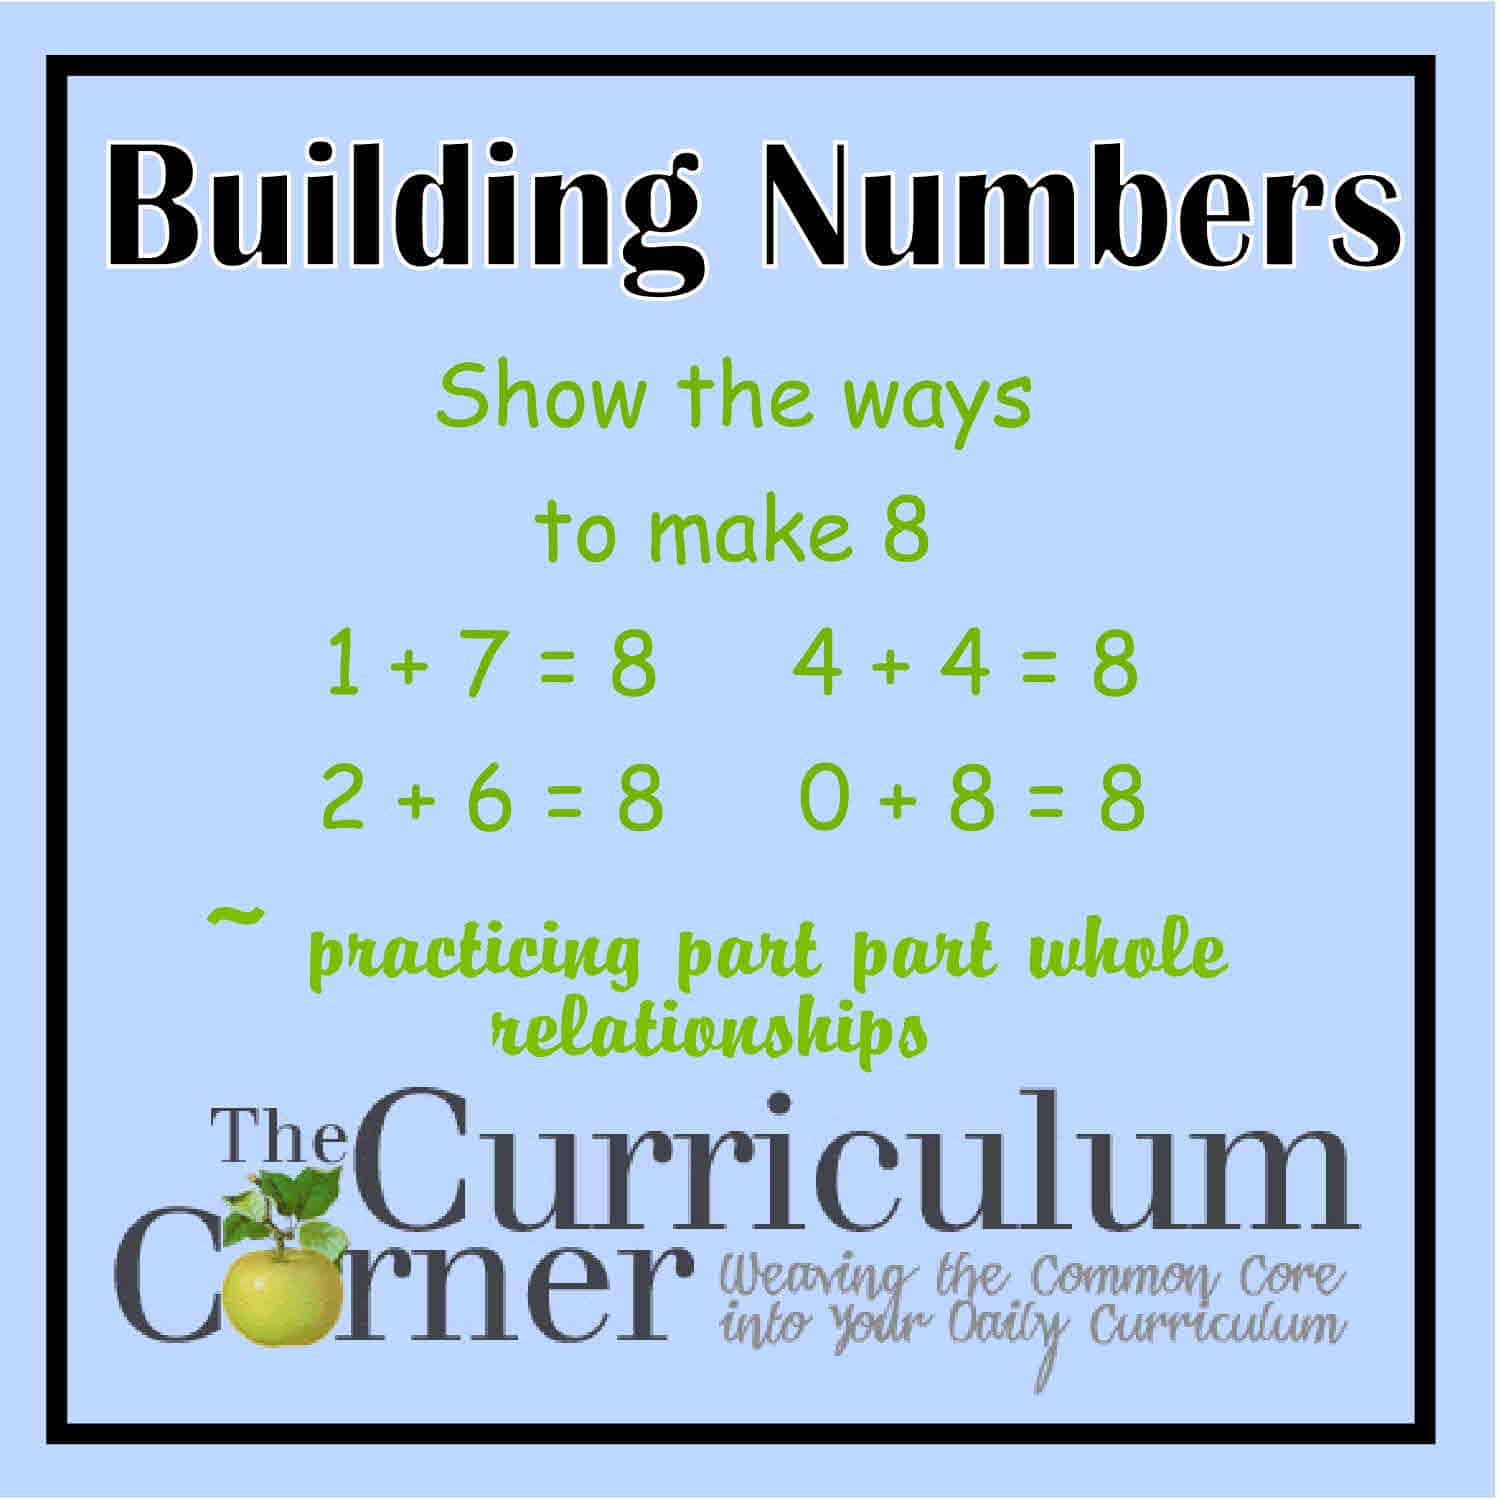 buildingnumbers-the-curriculum-corner-123